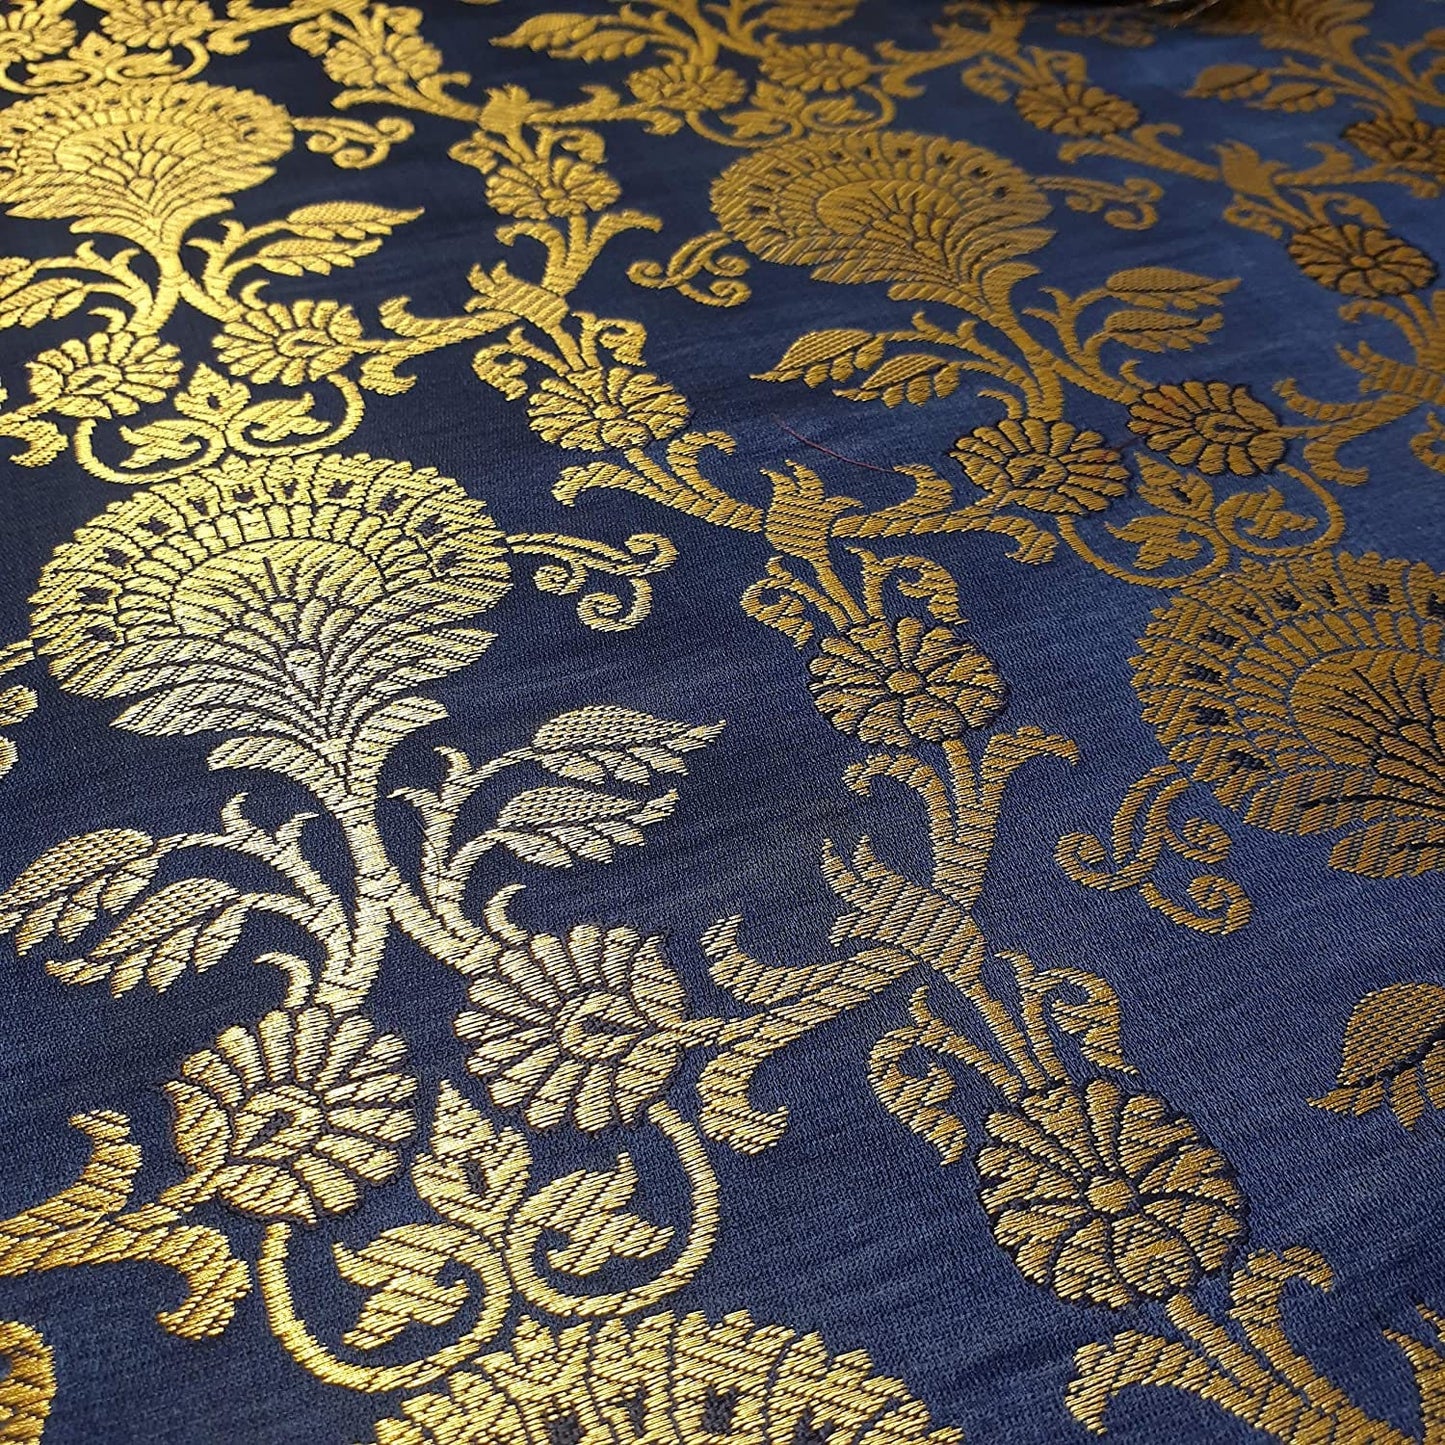 Ornamental Floral Gold Metallic Print Indian Banarasi Brocade Fabric (Navy Blue)